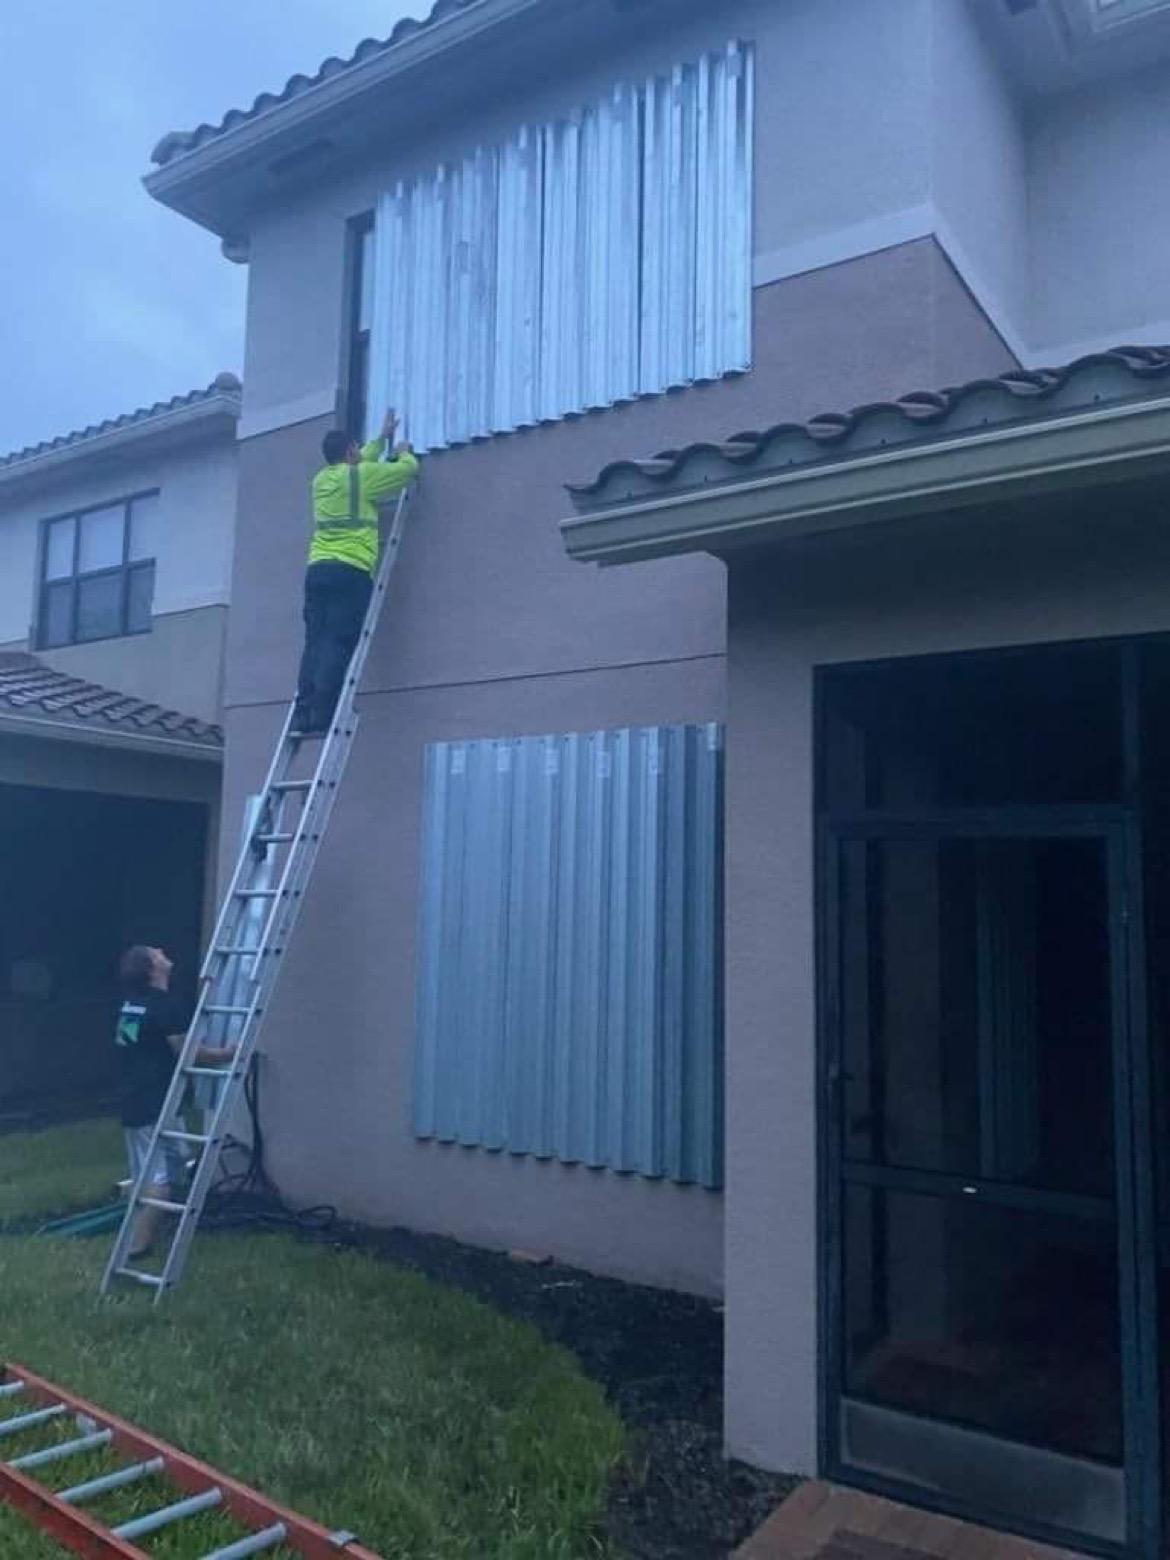 Jonas orkansäkrade husets fönster.